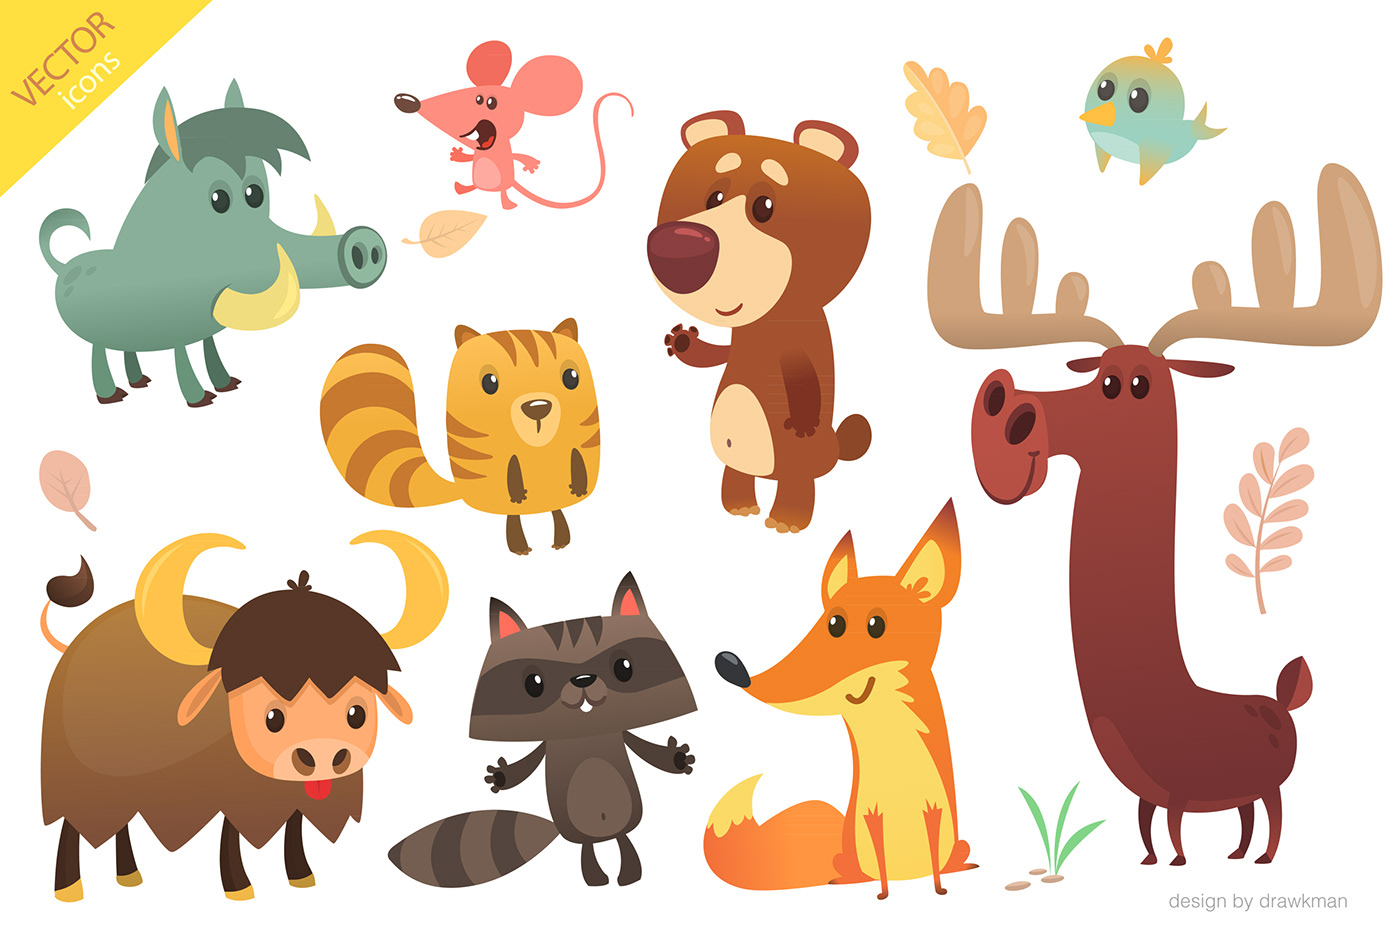 cartoon animals children's book design Character logo sticker giraffe